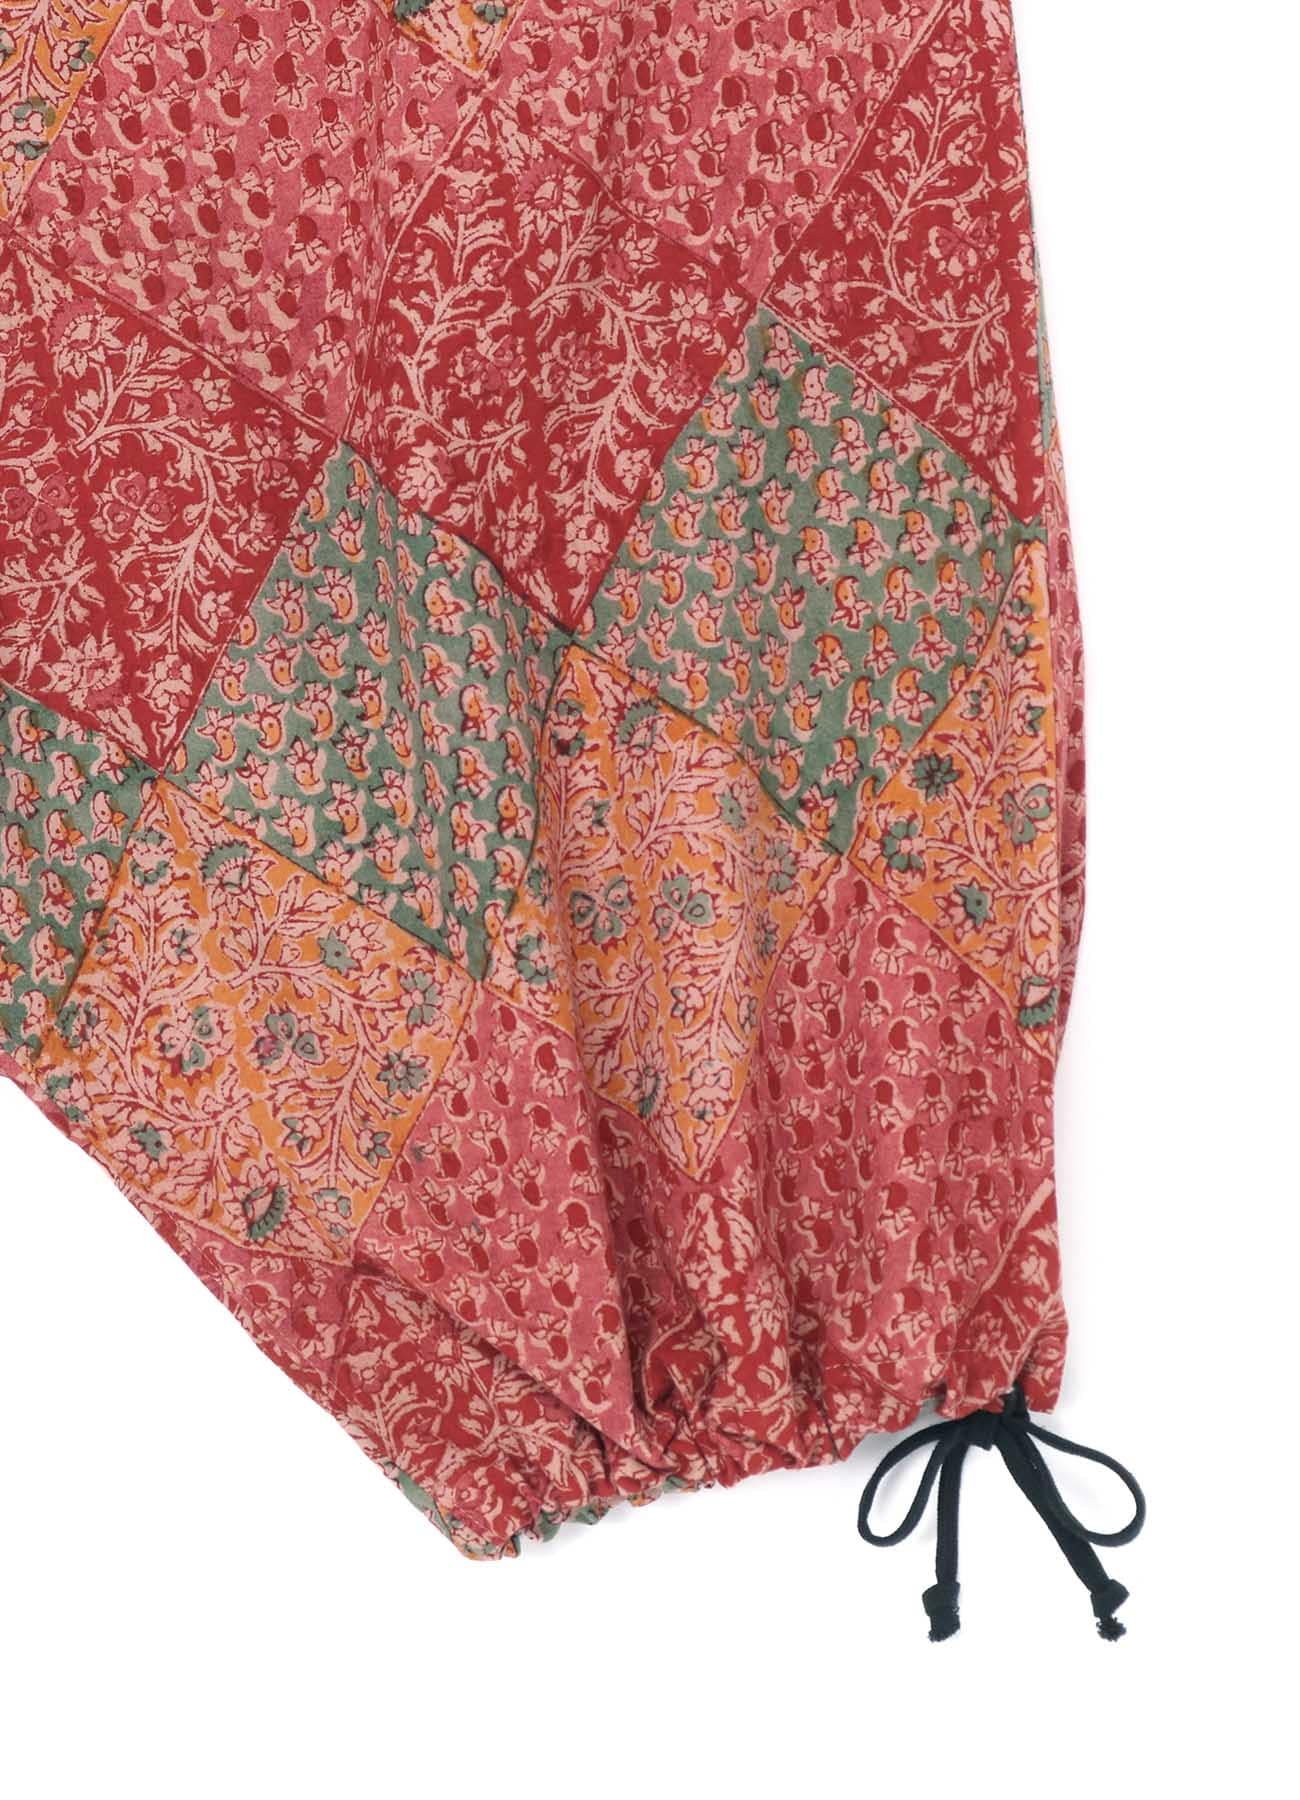 Nr Roma Stretchable Plain Pants Fabric at Rs 420/kg, Angeripalayam Main  Road, Tiruppur